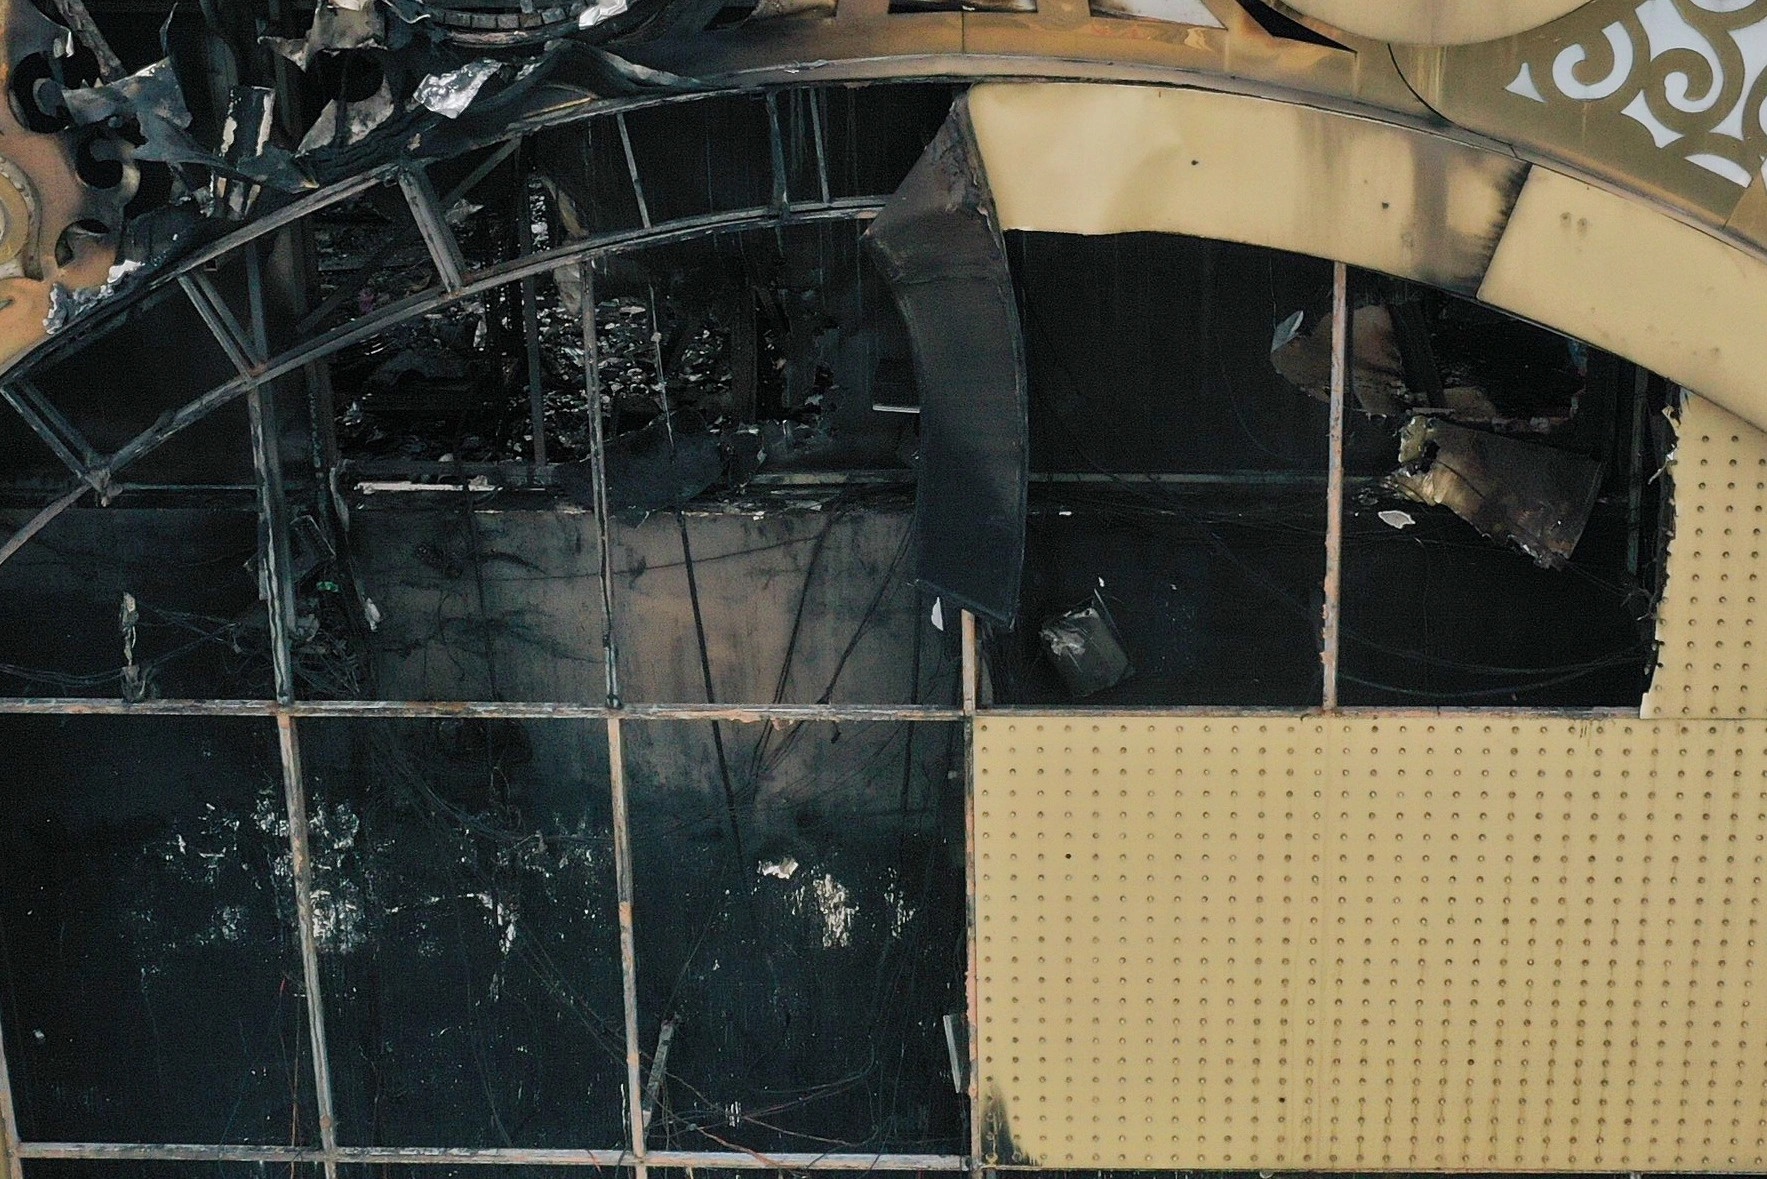 Điện trong biển quảng cáo của quán karaoke là thảm họa gây cháy - Ảnh 2.